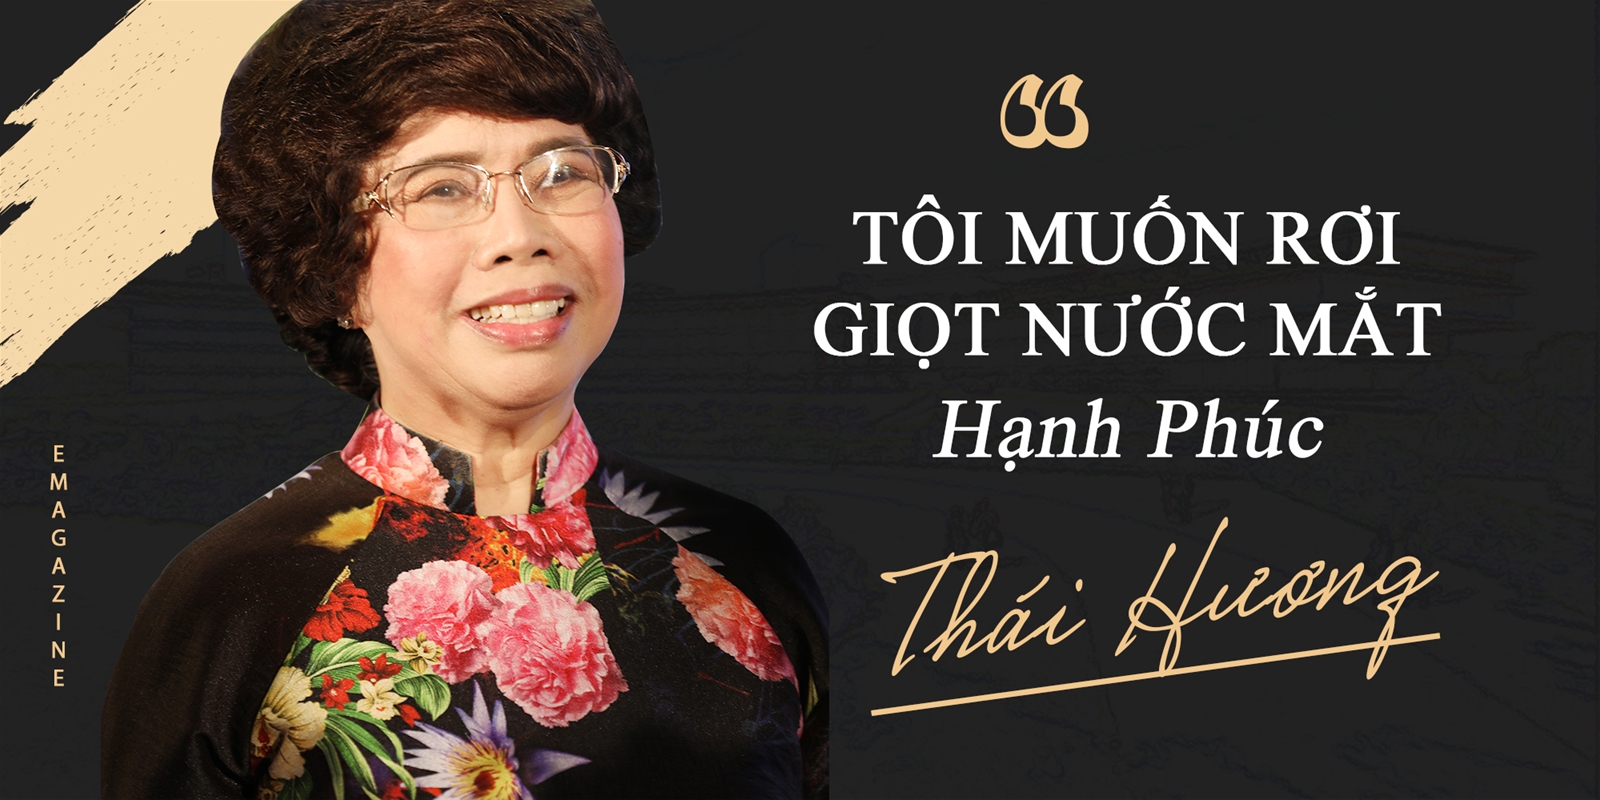 Bà Thái Hương: "Tôi muốn rơi giọt nước mắt hạnh phúc"